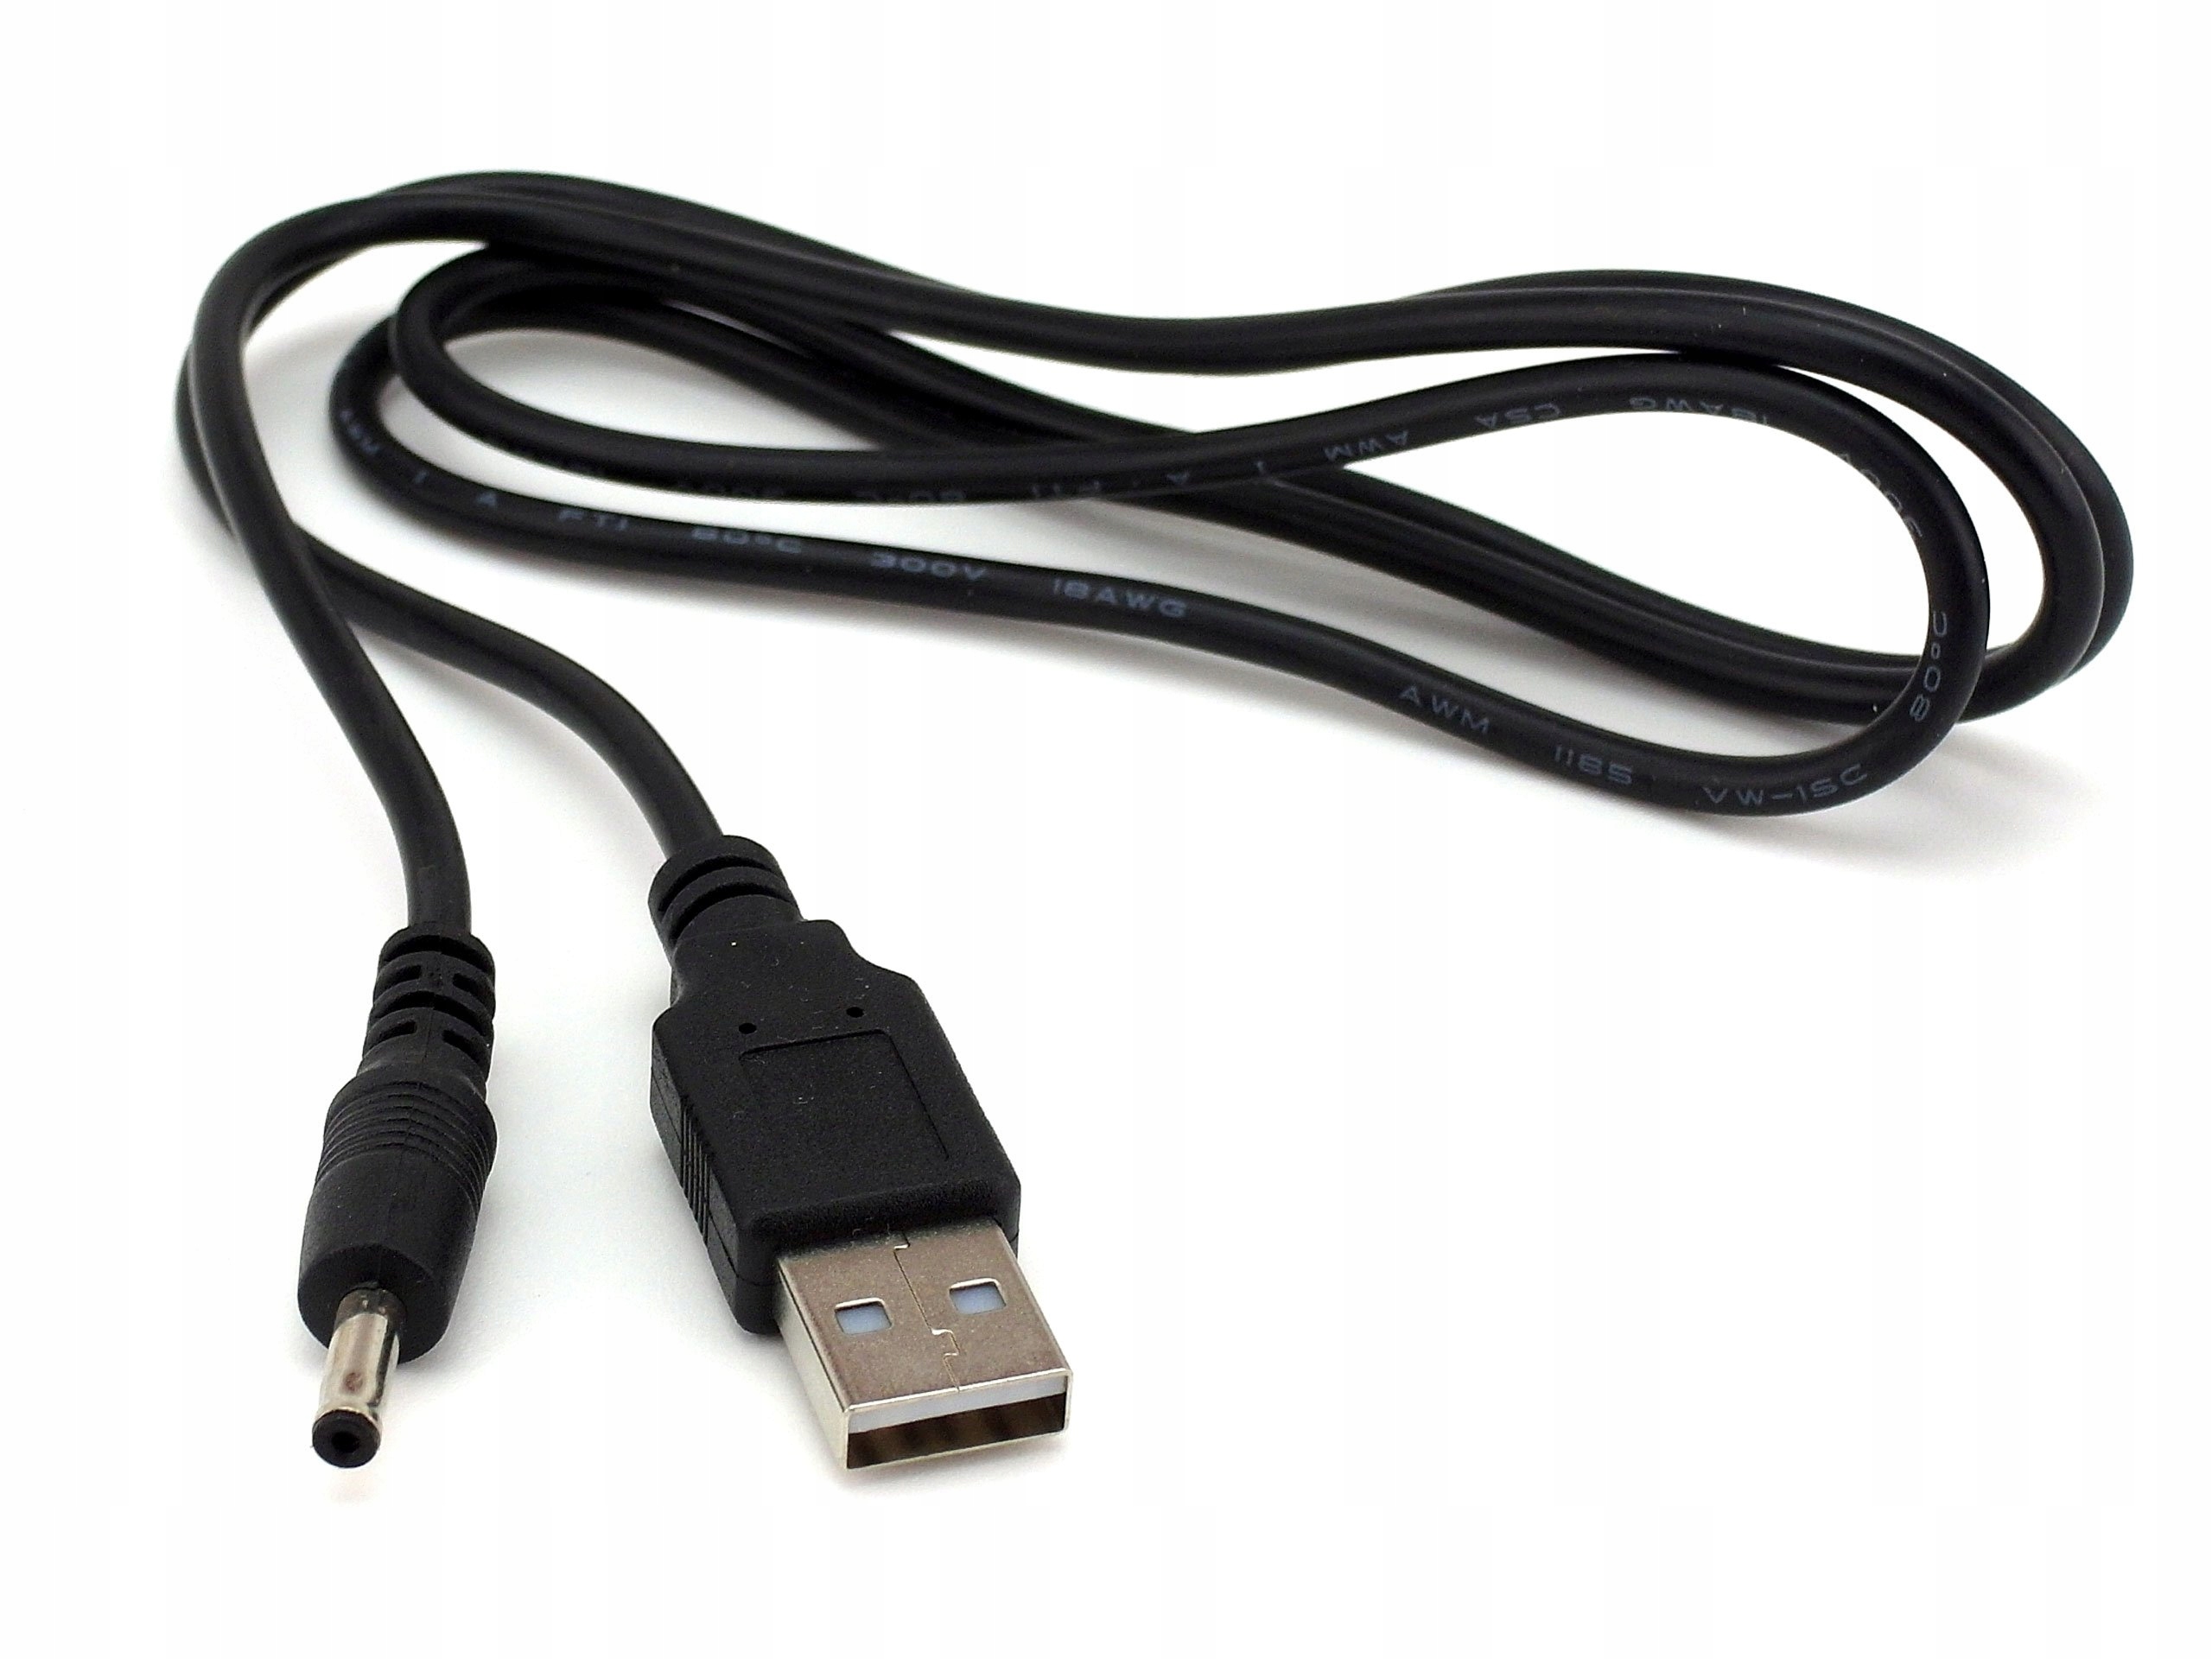 Купить кабель для планшетов. USB кабель для Miix 320. Кабель для зарядки планшета леново. Зарядный шнур для планшета Lenovo. Кабель USB для планшета Lenovo IDEAPAD k1.